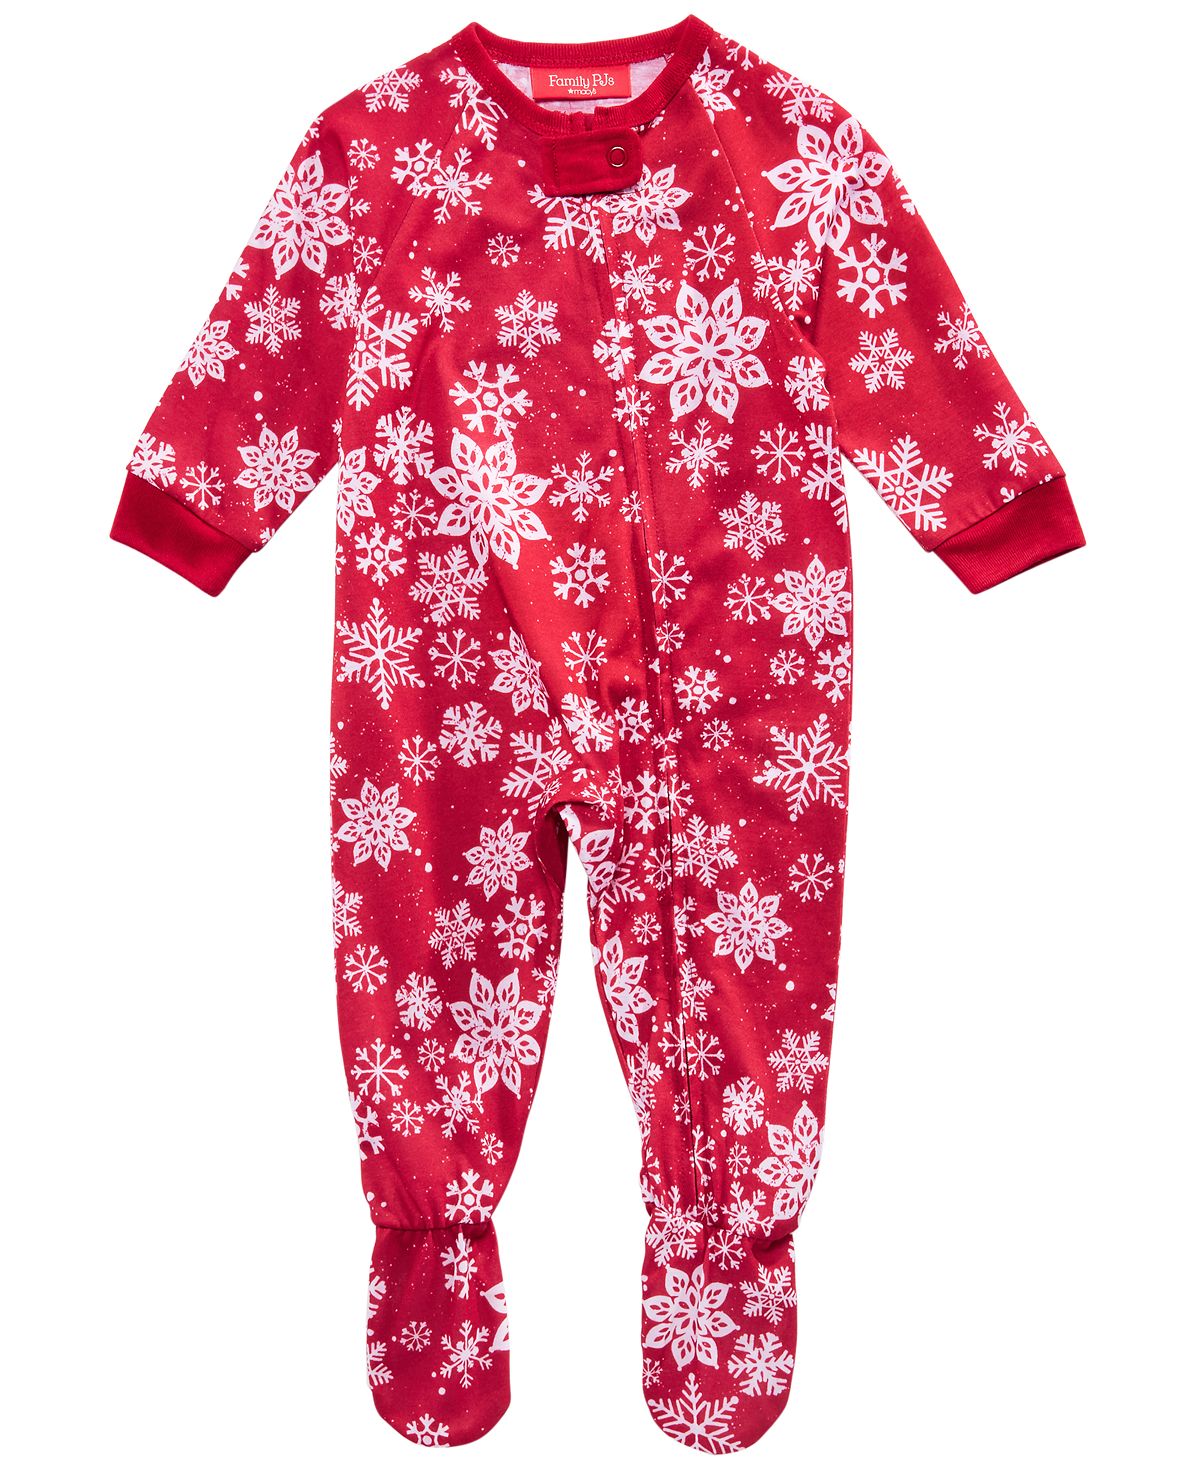 Family Pajamas Matching Baby Merry Pajamas Snowflake